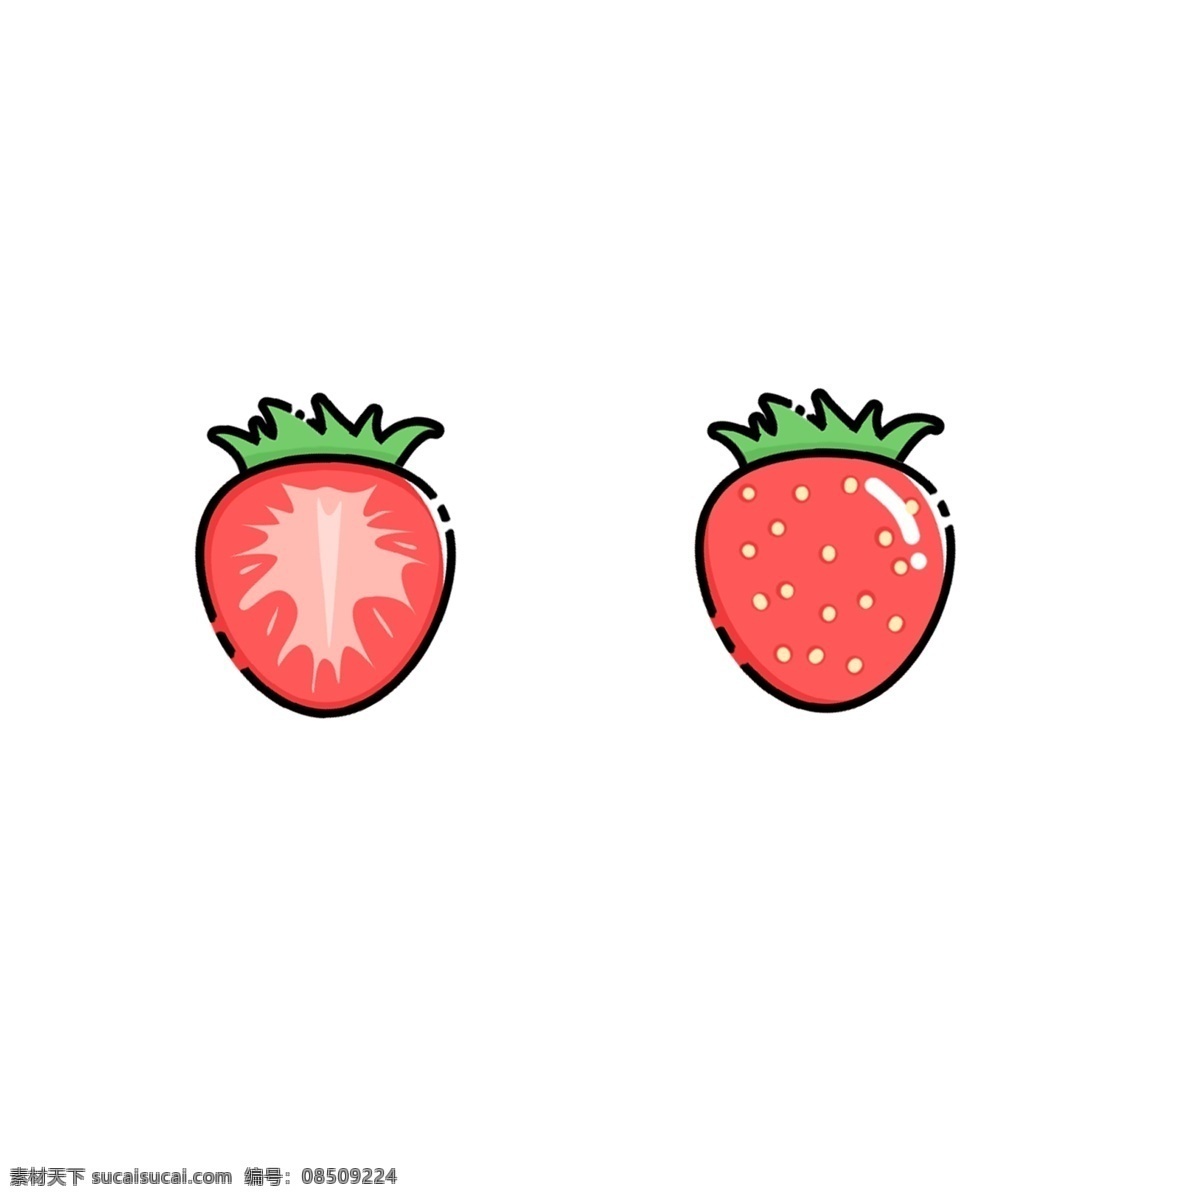 卡通 矢量 草莓 水果 红色 儿童画 扁平化 手绘 树叶 简约 绿色 食物